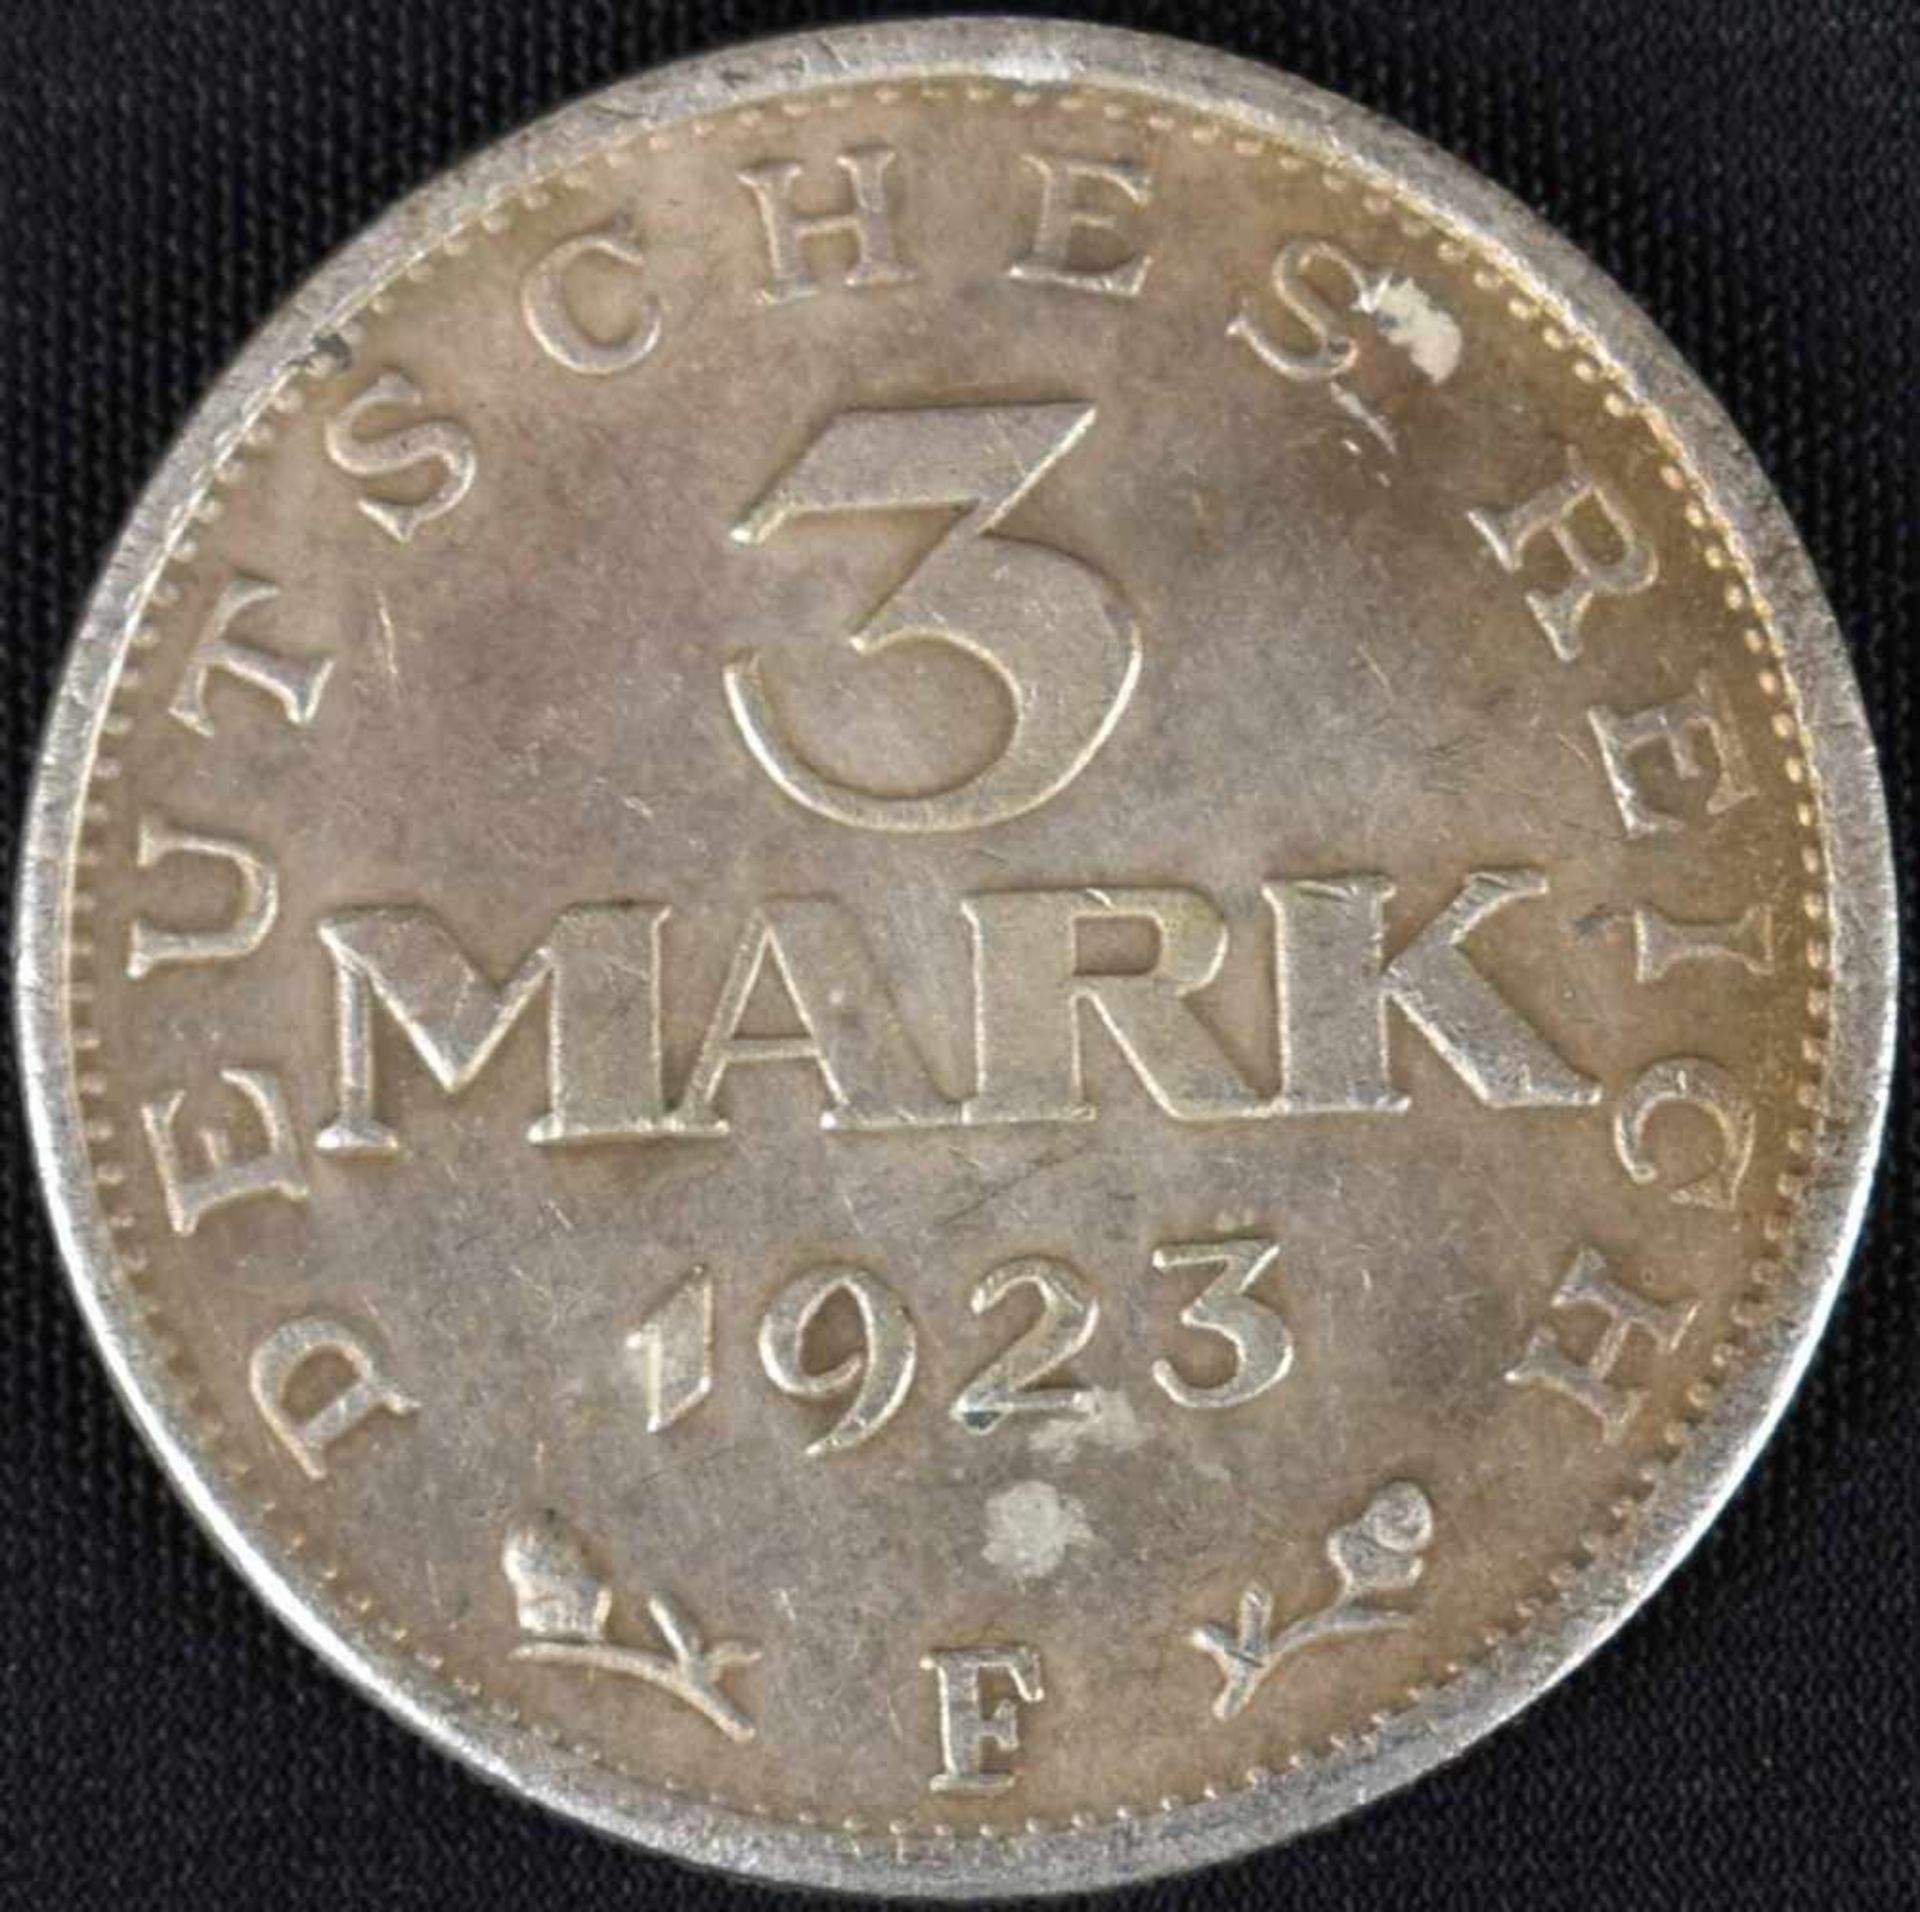 Silbermünze Weimarer Republik - Verfassungstag 1923 3 Mark, av. Wertangabe, rv. Adler, " - Bild 2 aus 3